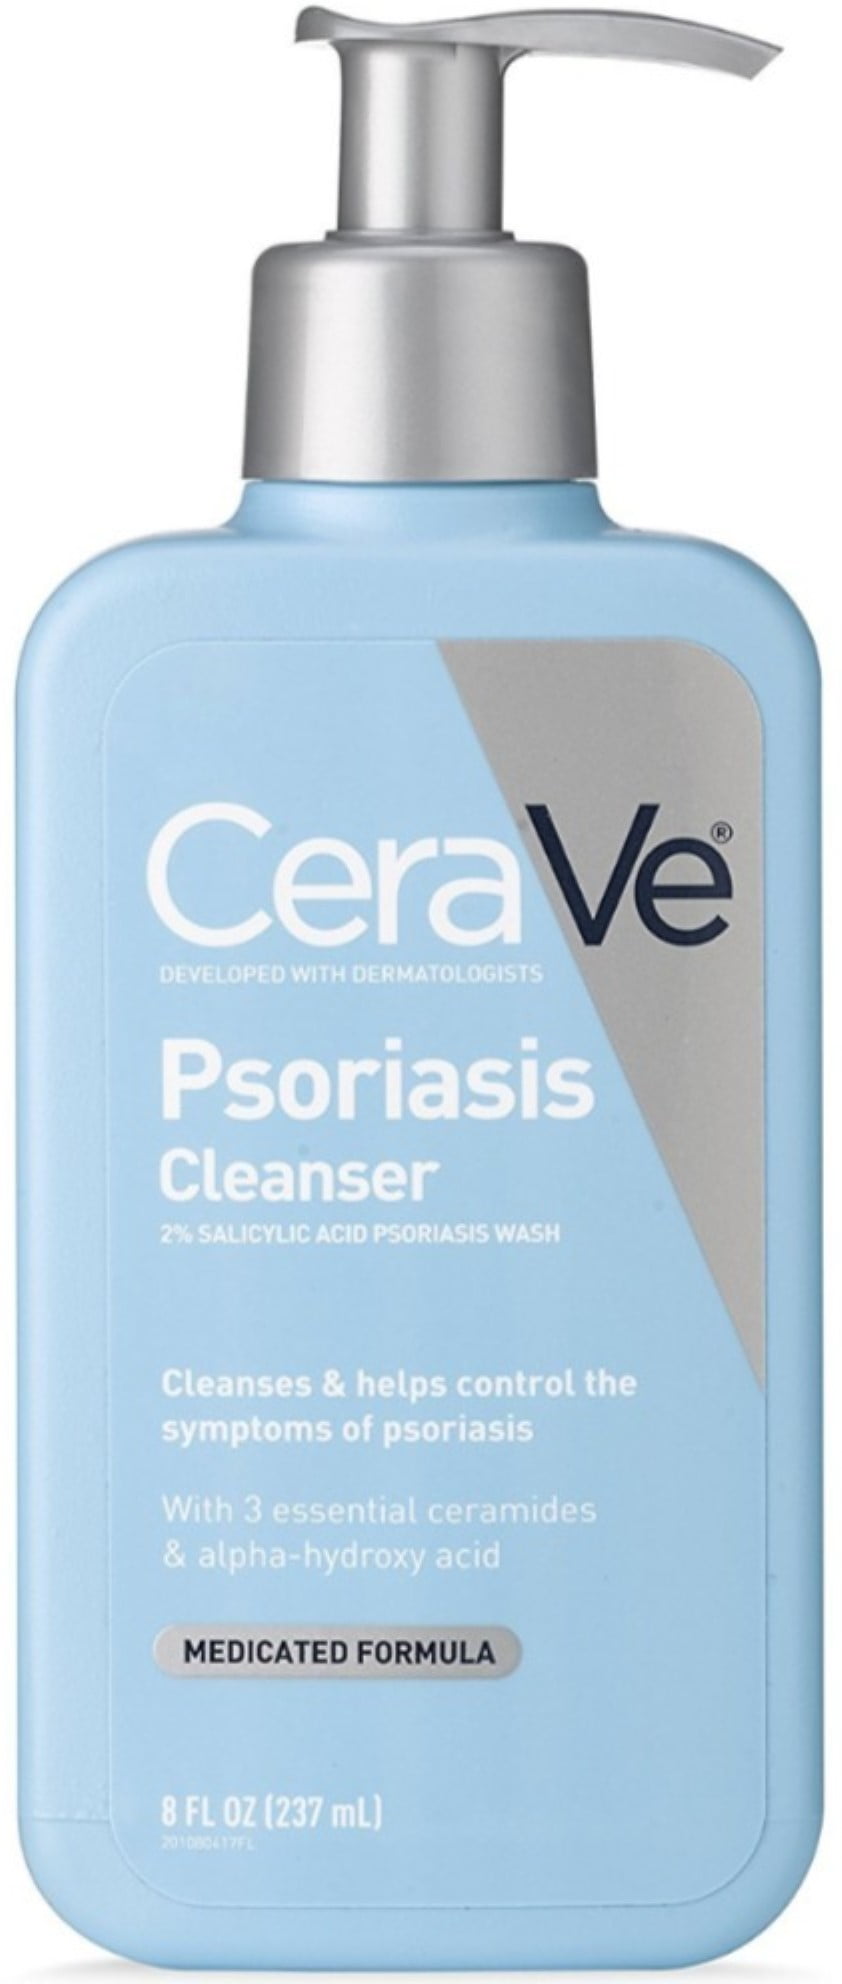 Cerave psoriasis cleanser target Gyengéd derm lotions pikkelysömörhöz